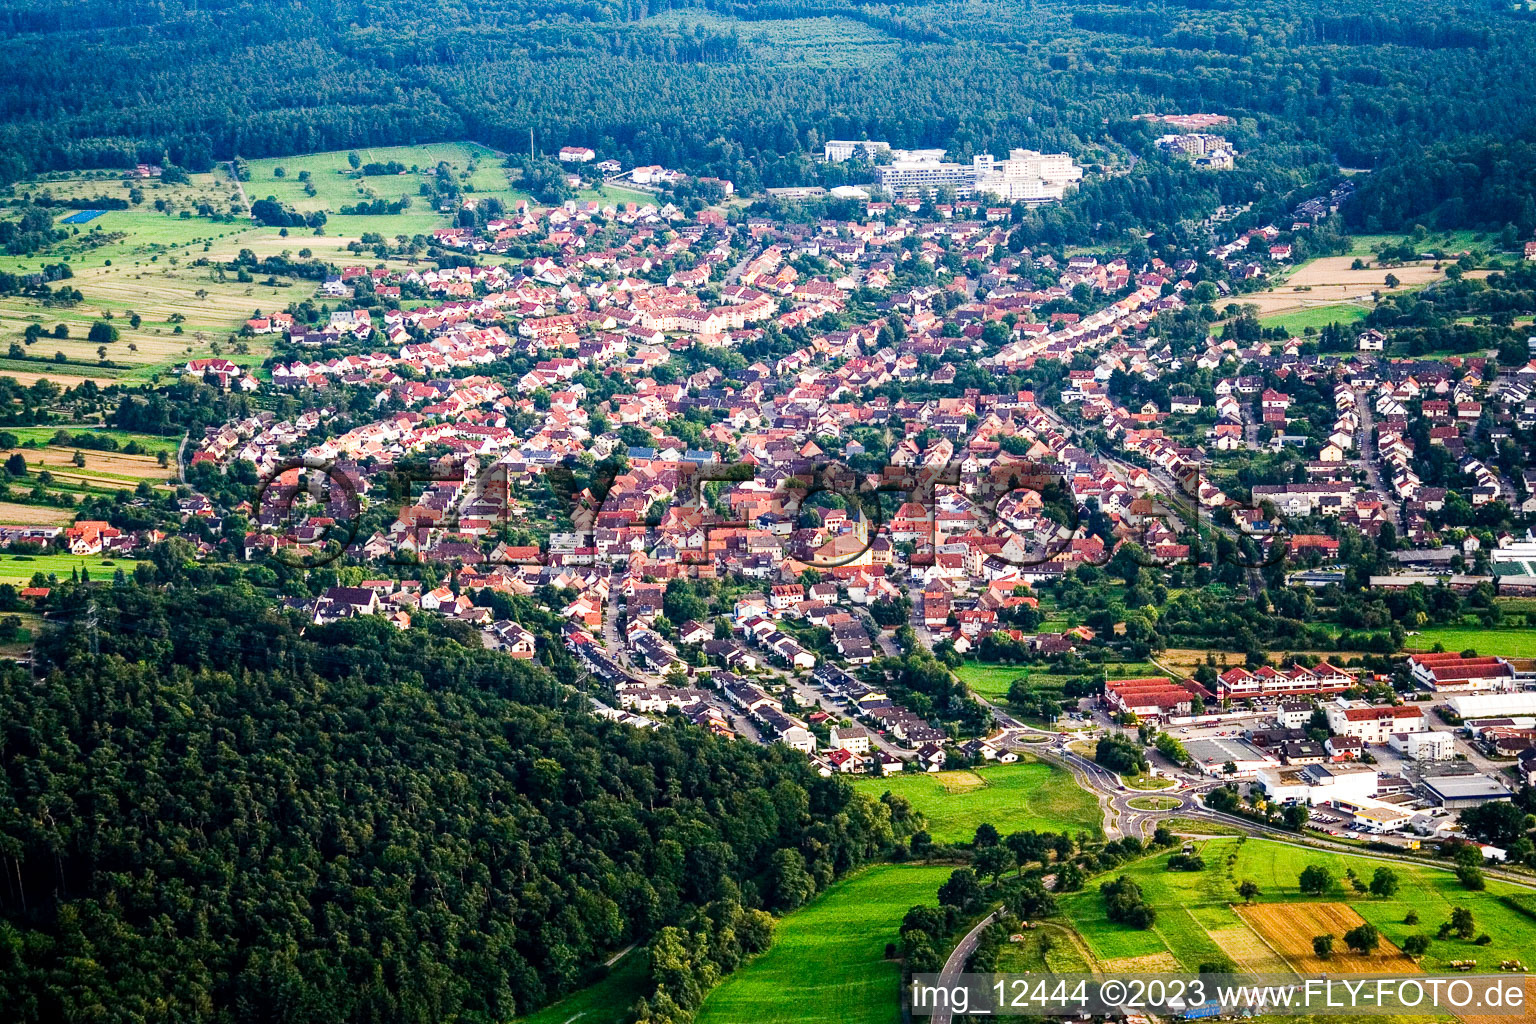 Luftbild von Ortsteil Langensteinbach in Karlsbad im Bundesland Baden-Württemberg, Deutschland